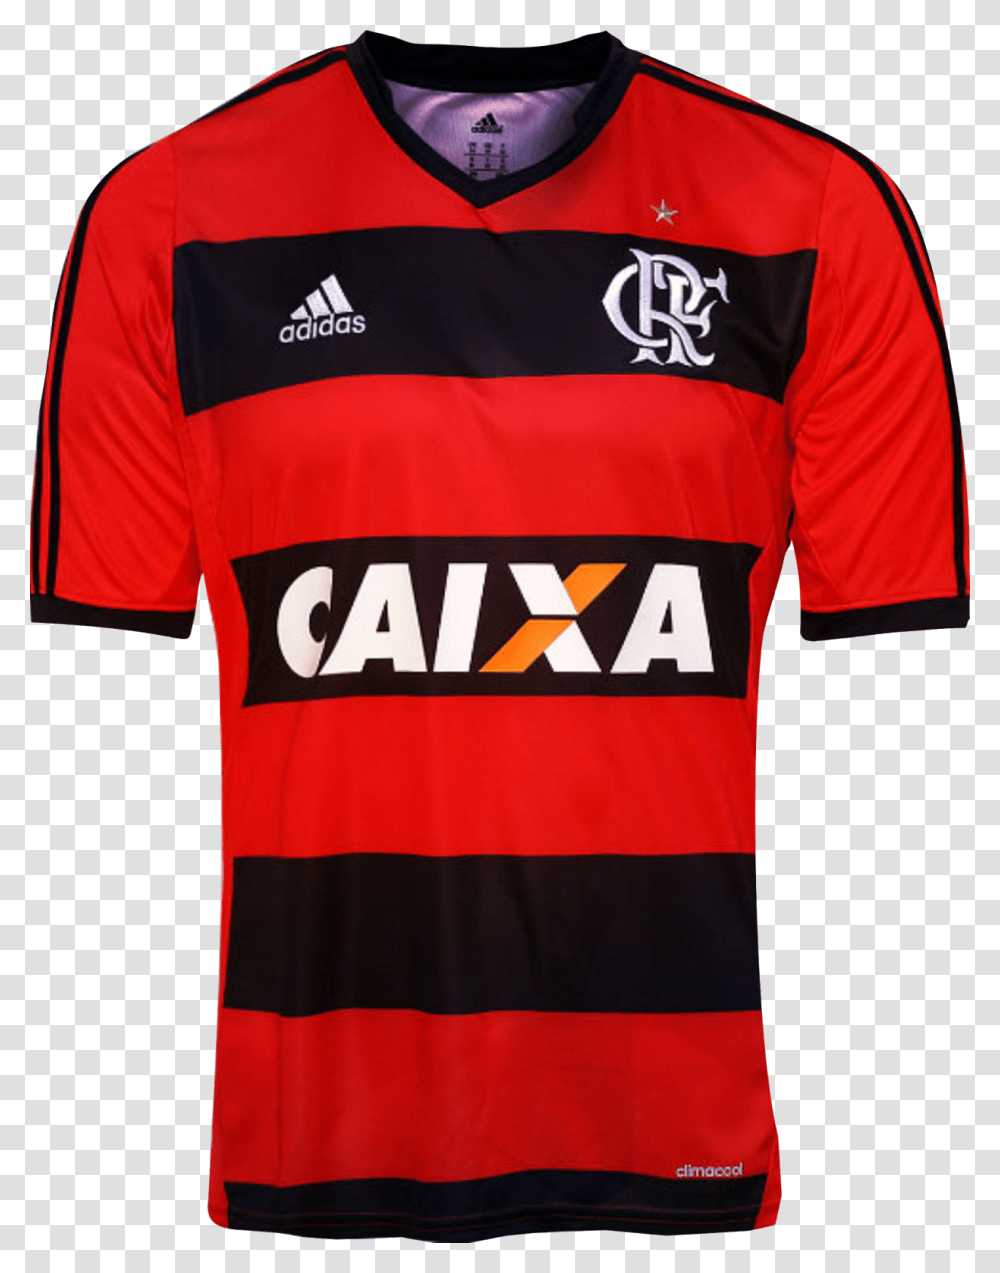 Clip Art Camisa Do Flamengo Flamengo Kit 17, Apparel, Shirt, Jersey Transparent Png